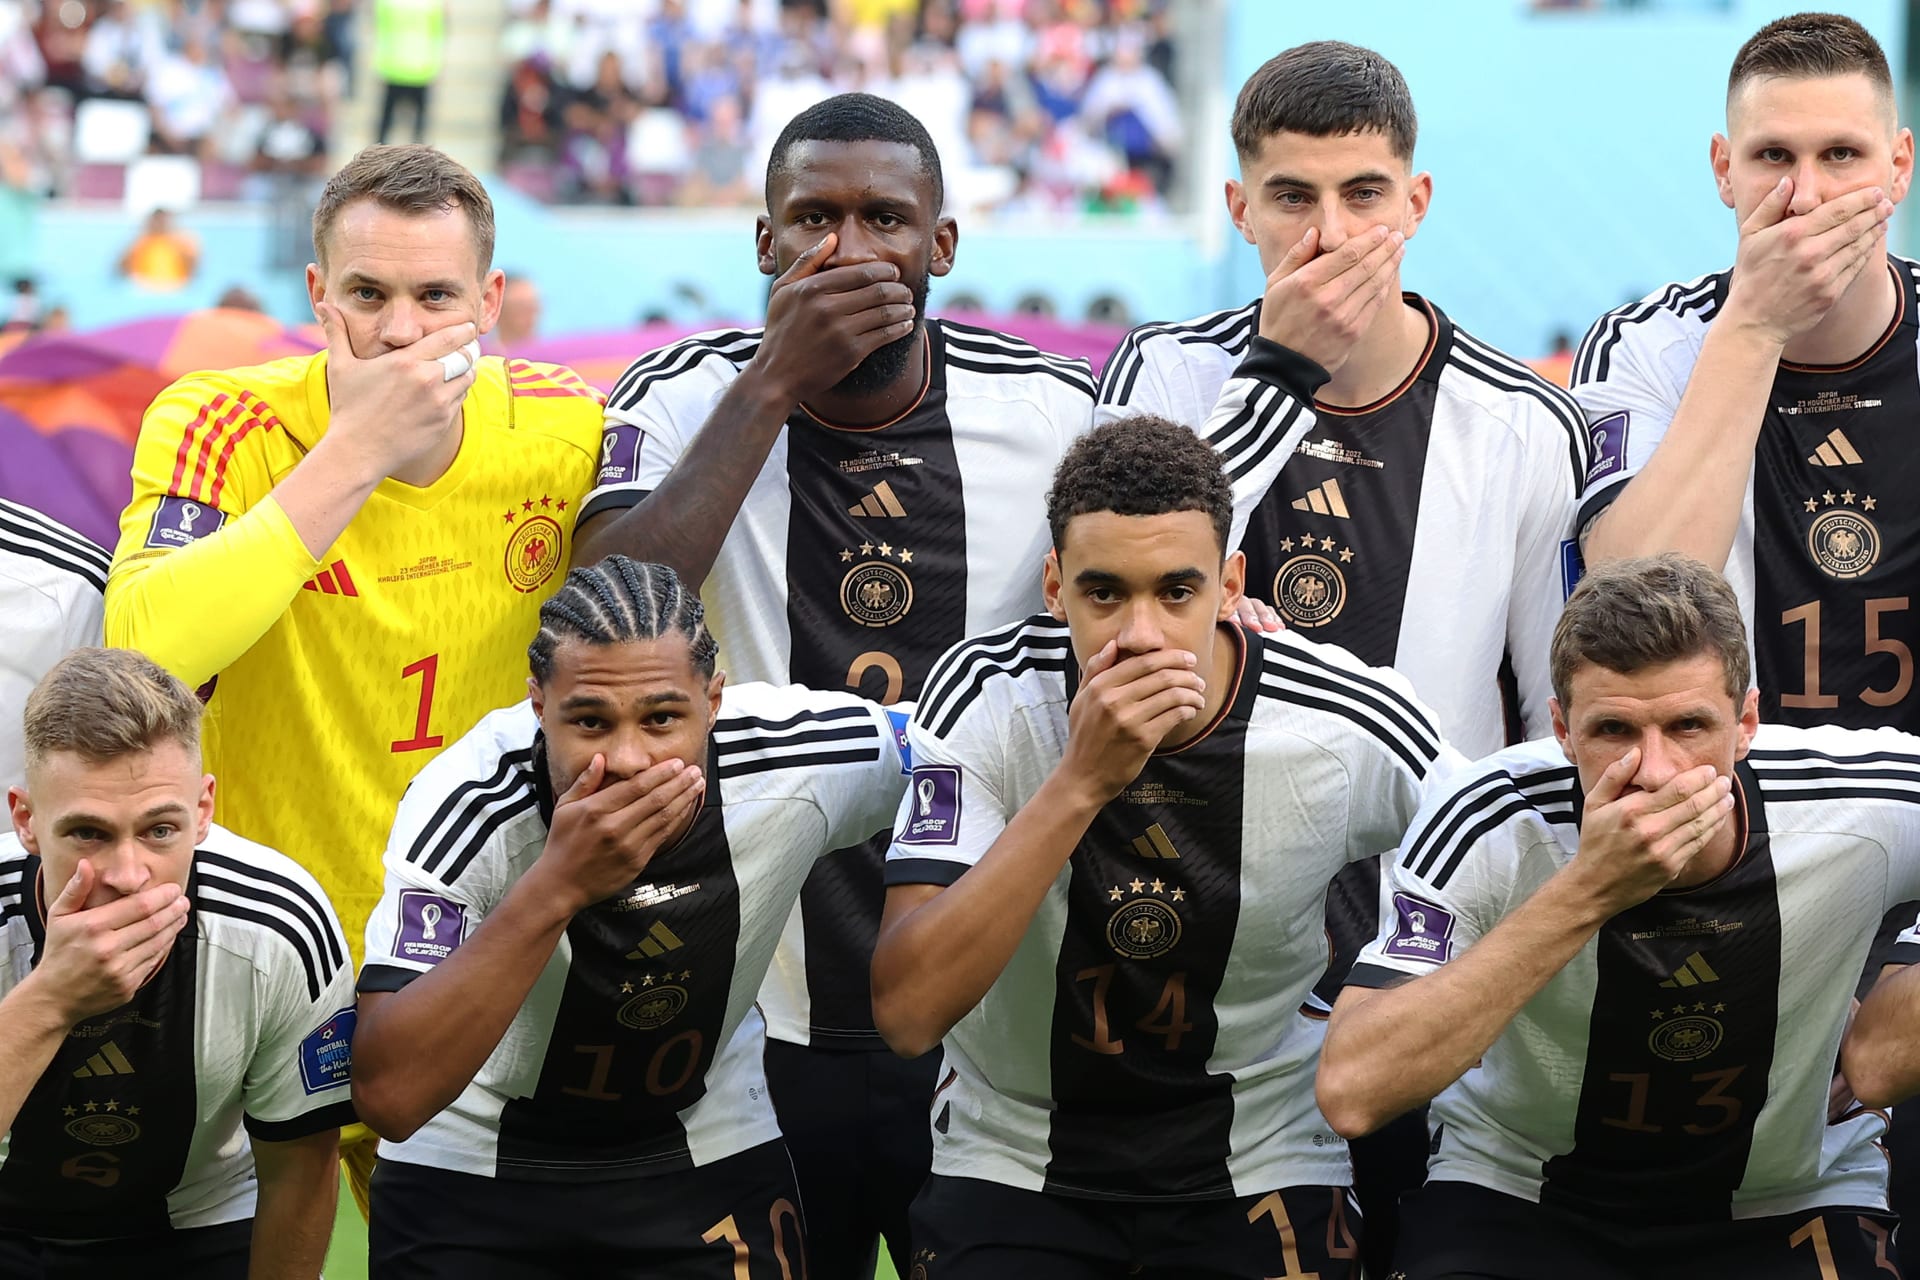 لاعبون من المنتخب األماني يغطون أفواههم في المونديال 